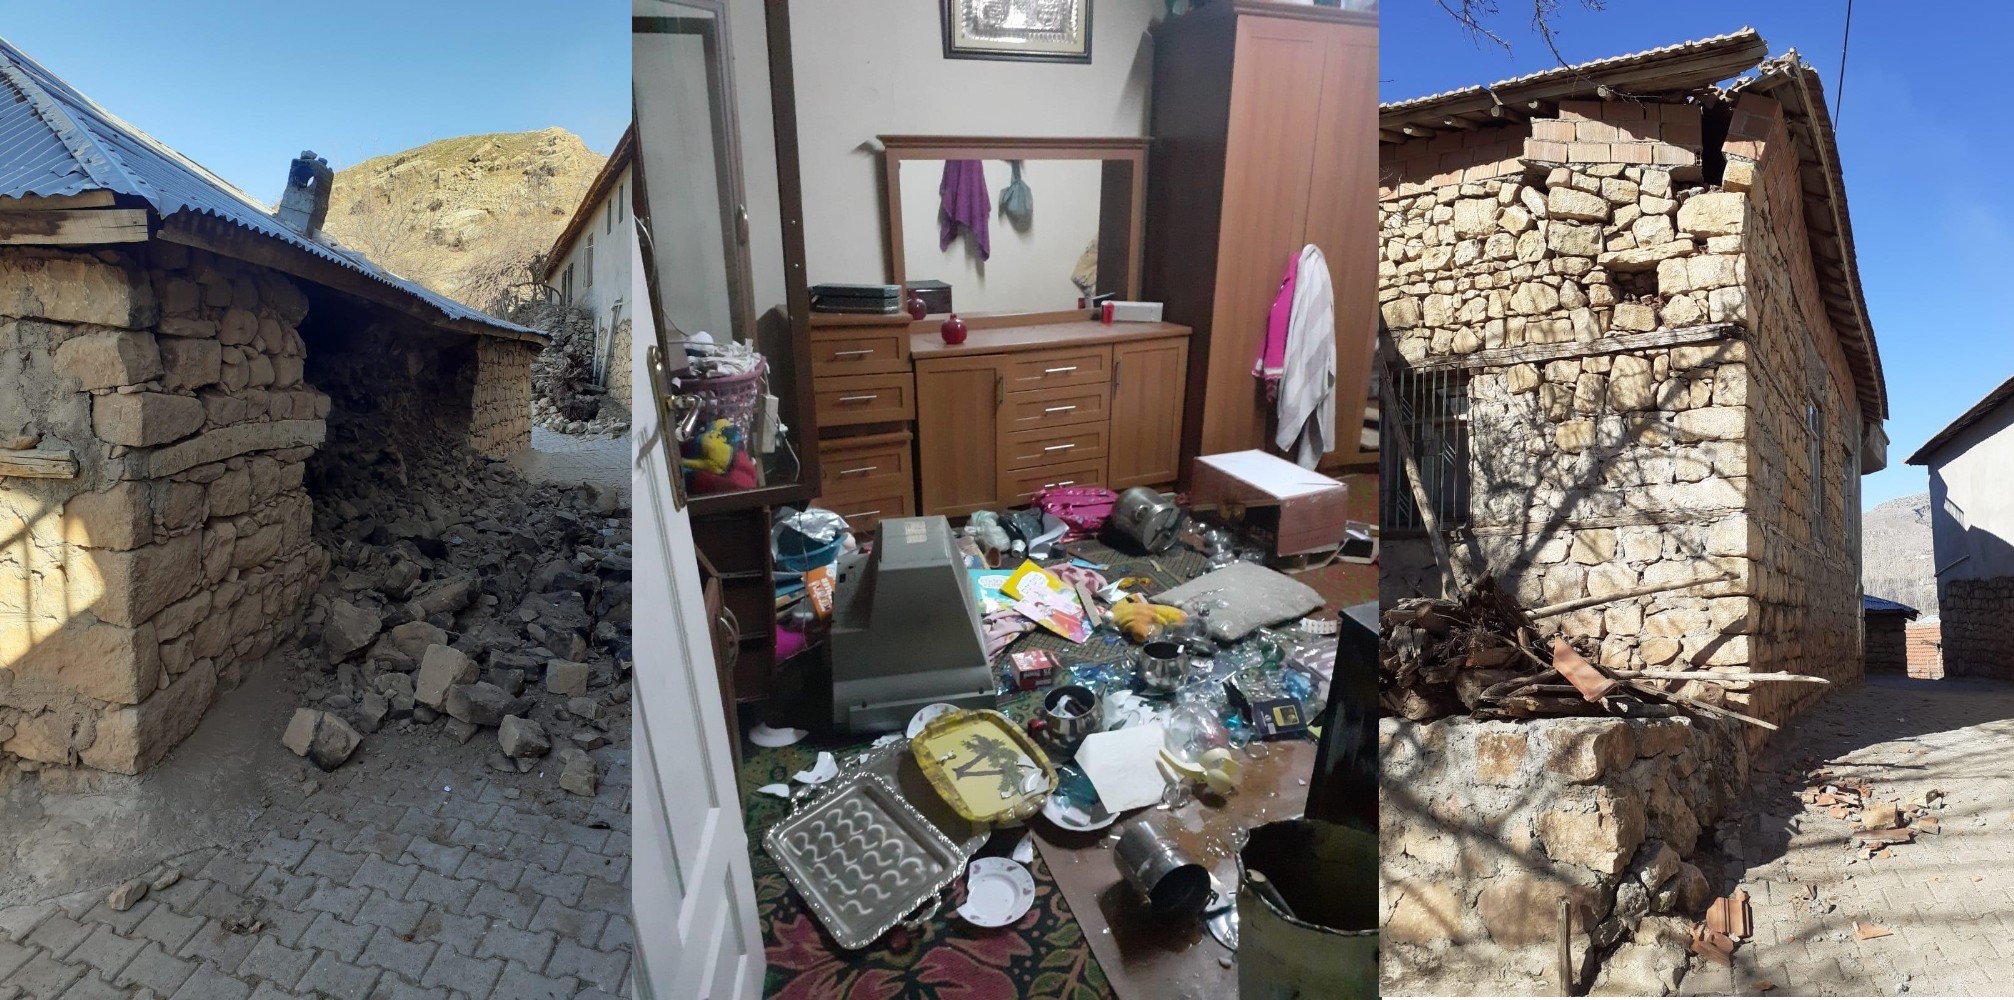 Deprem esnasında kalp krizi geçiren şahıs hayatını kaybetti #elazığdepremi